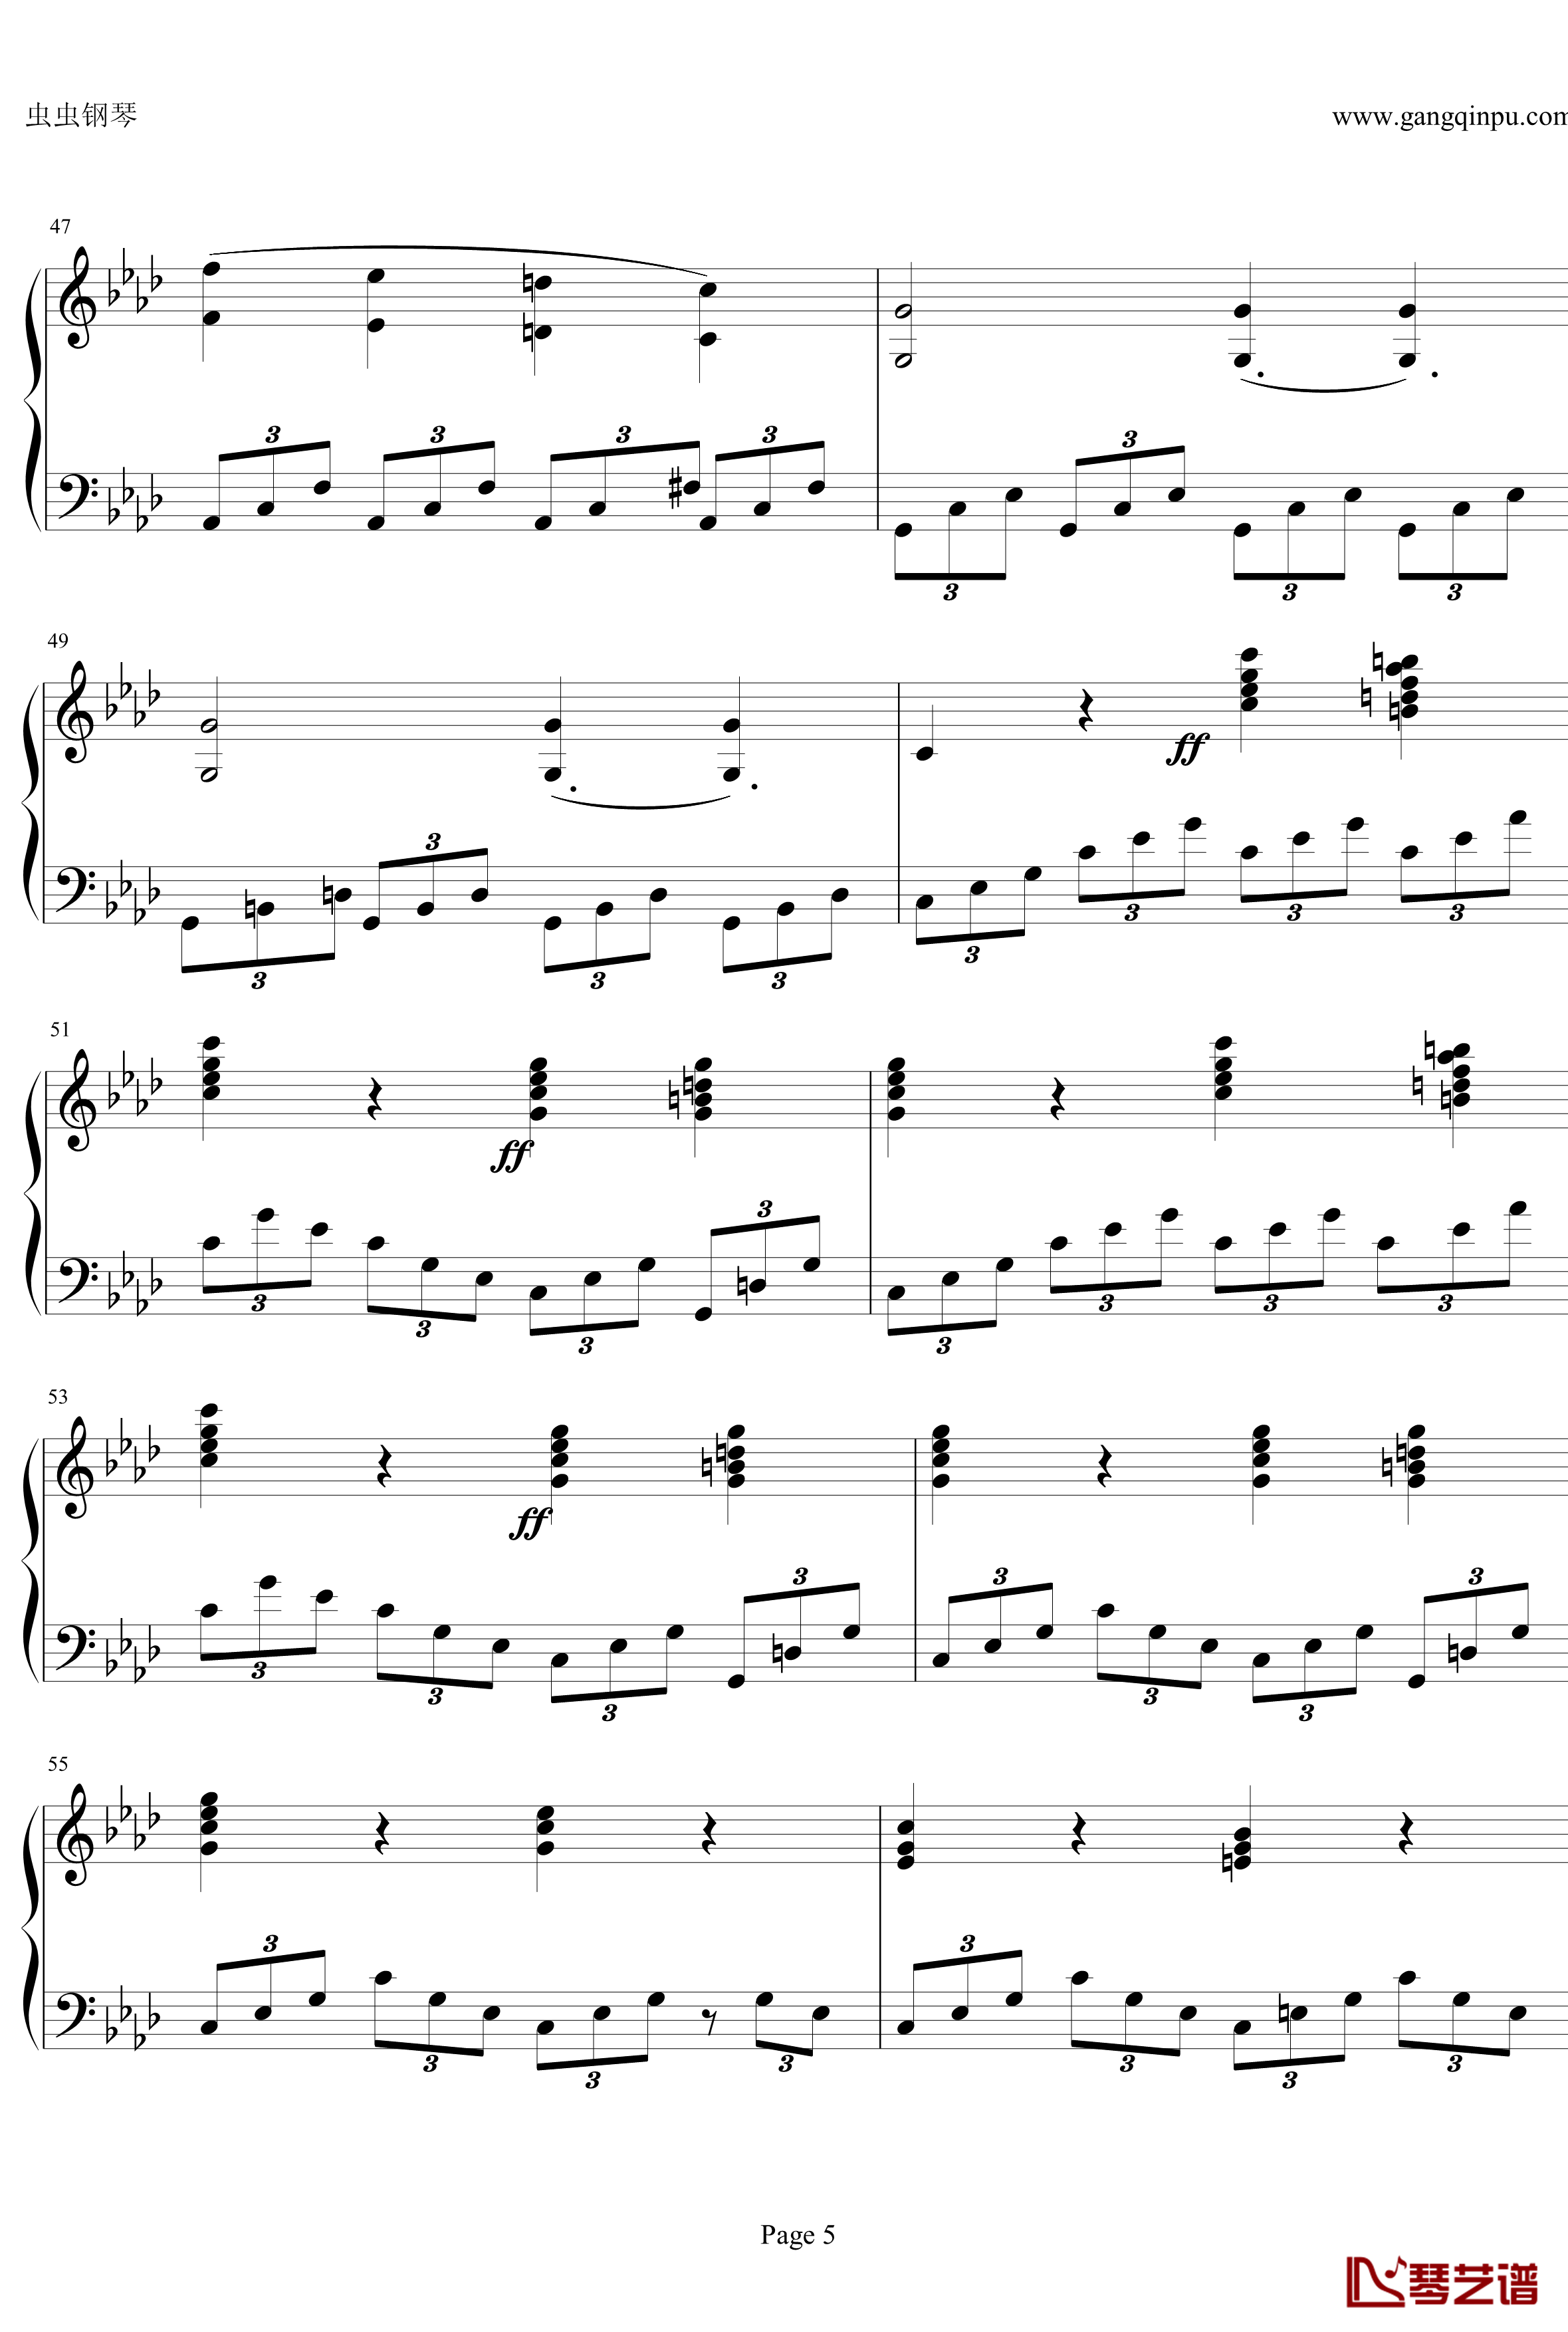 贝多芬第一钢琴奏鸣曲钢琴谱-作品2，第一号-贝多芬-beethoven5